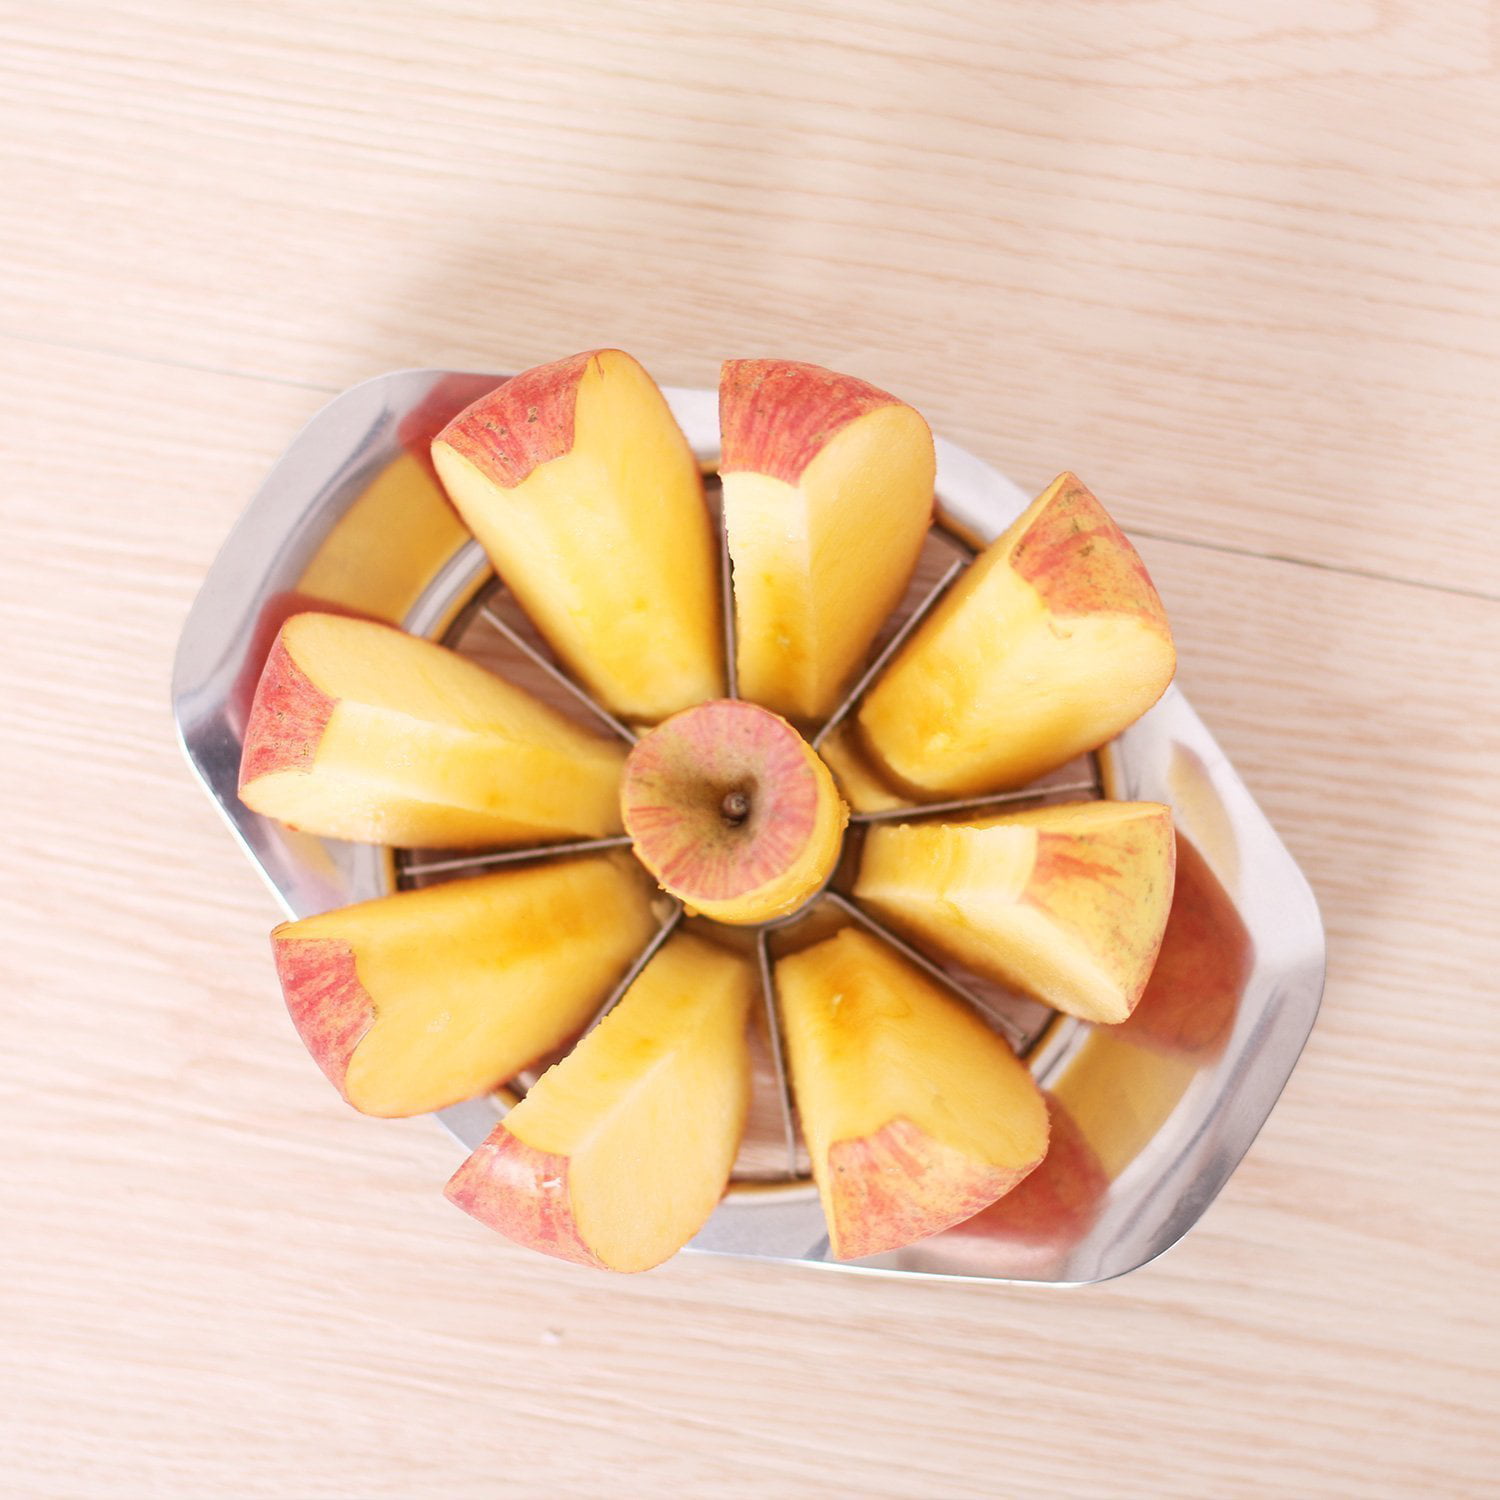 Stainless Steel Slicer Fruit Divider Fruit Corer - Temu